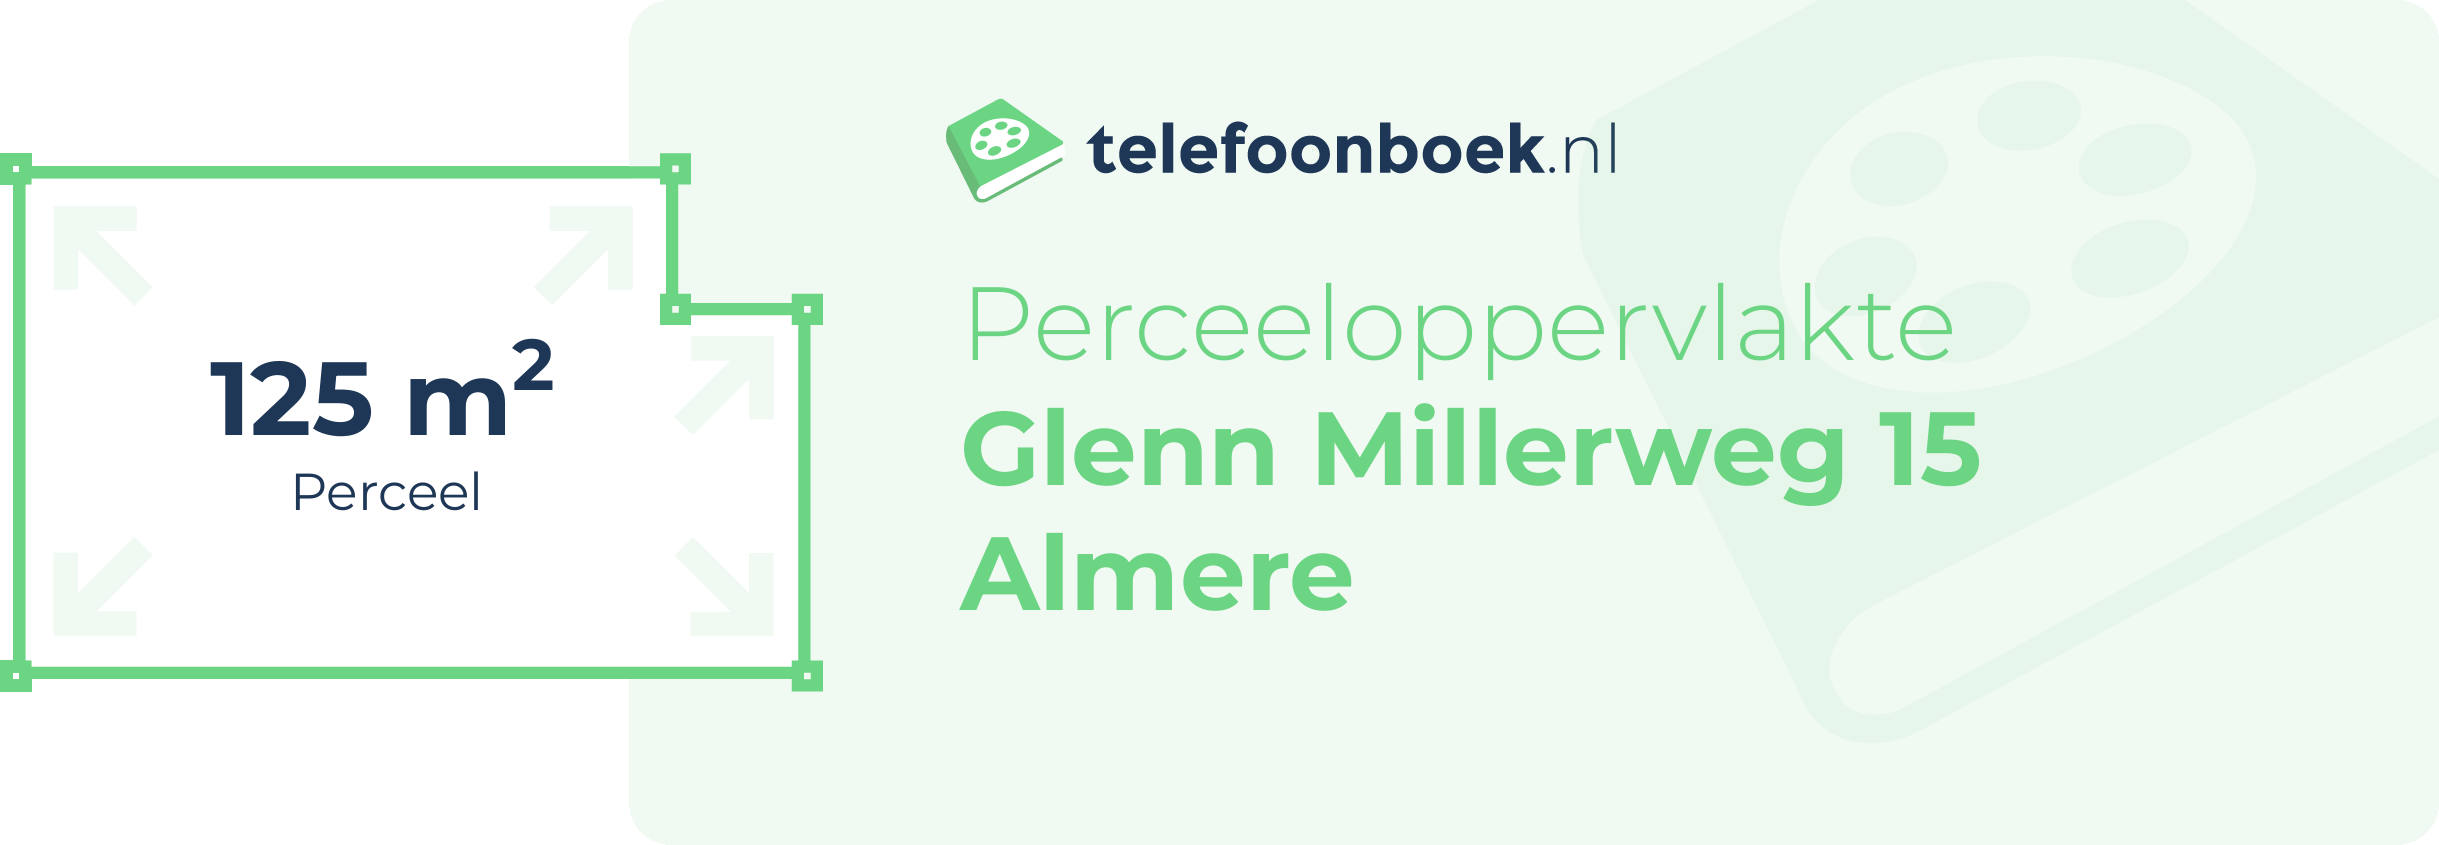 Perceeloppervlakte Glenn Millerweg 15 Almere